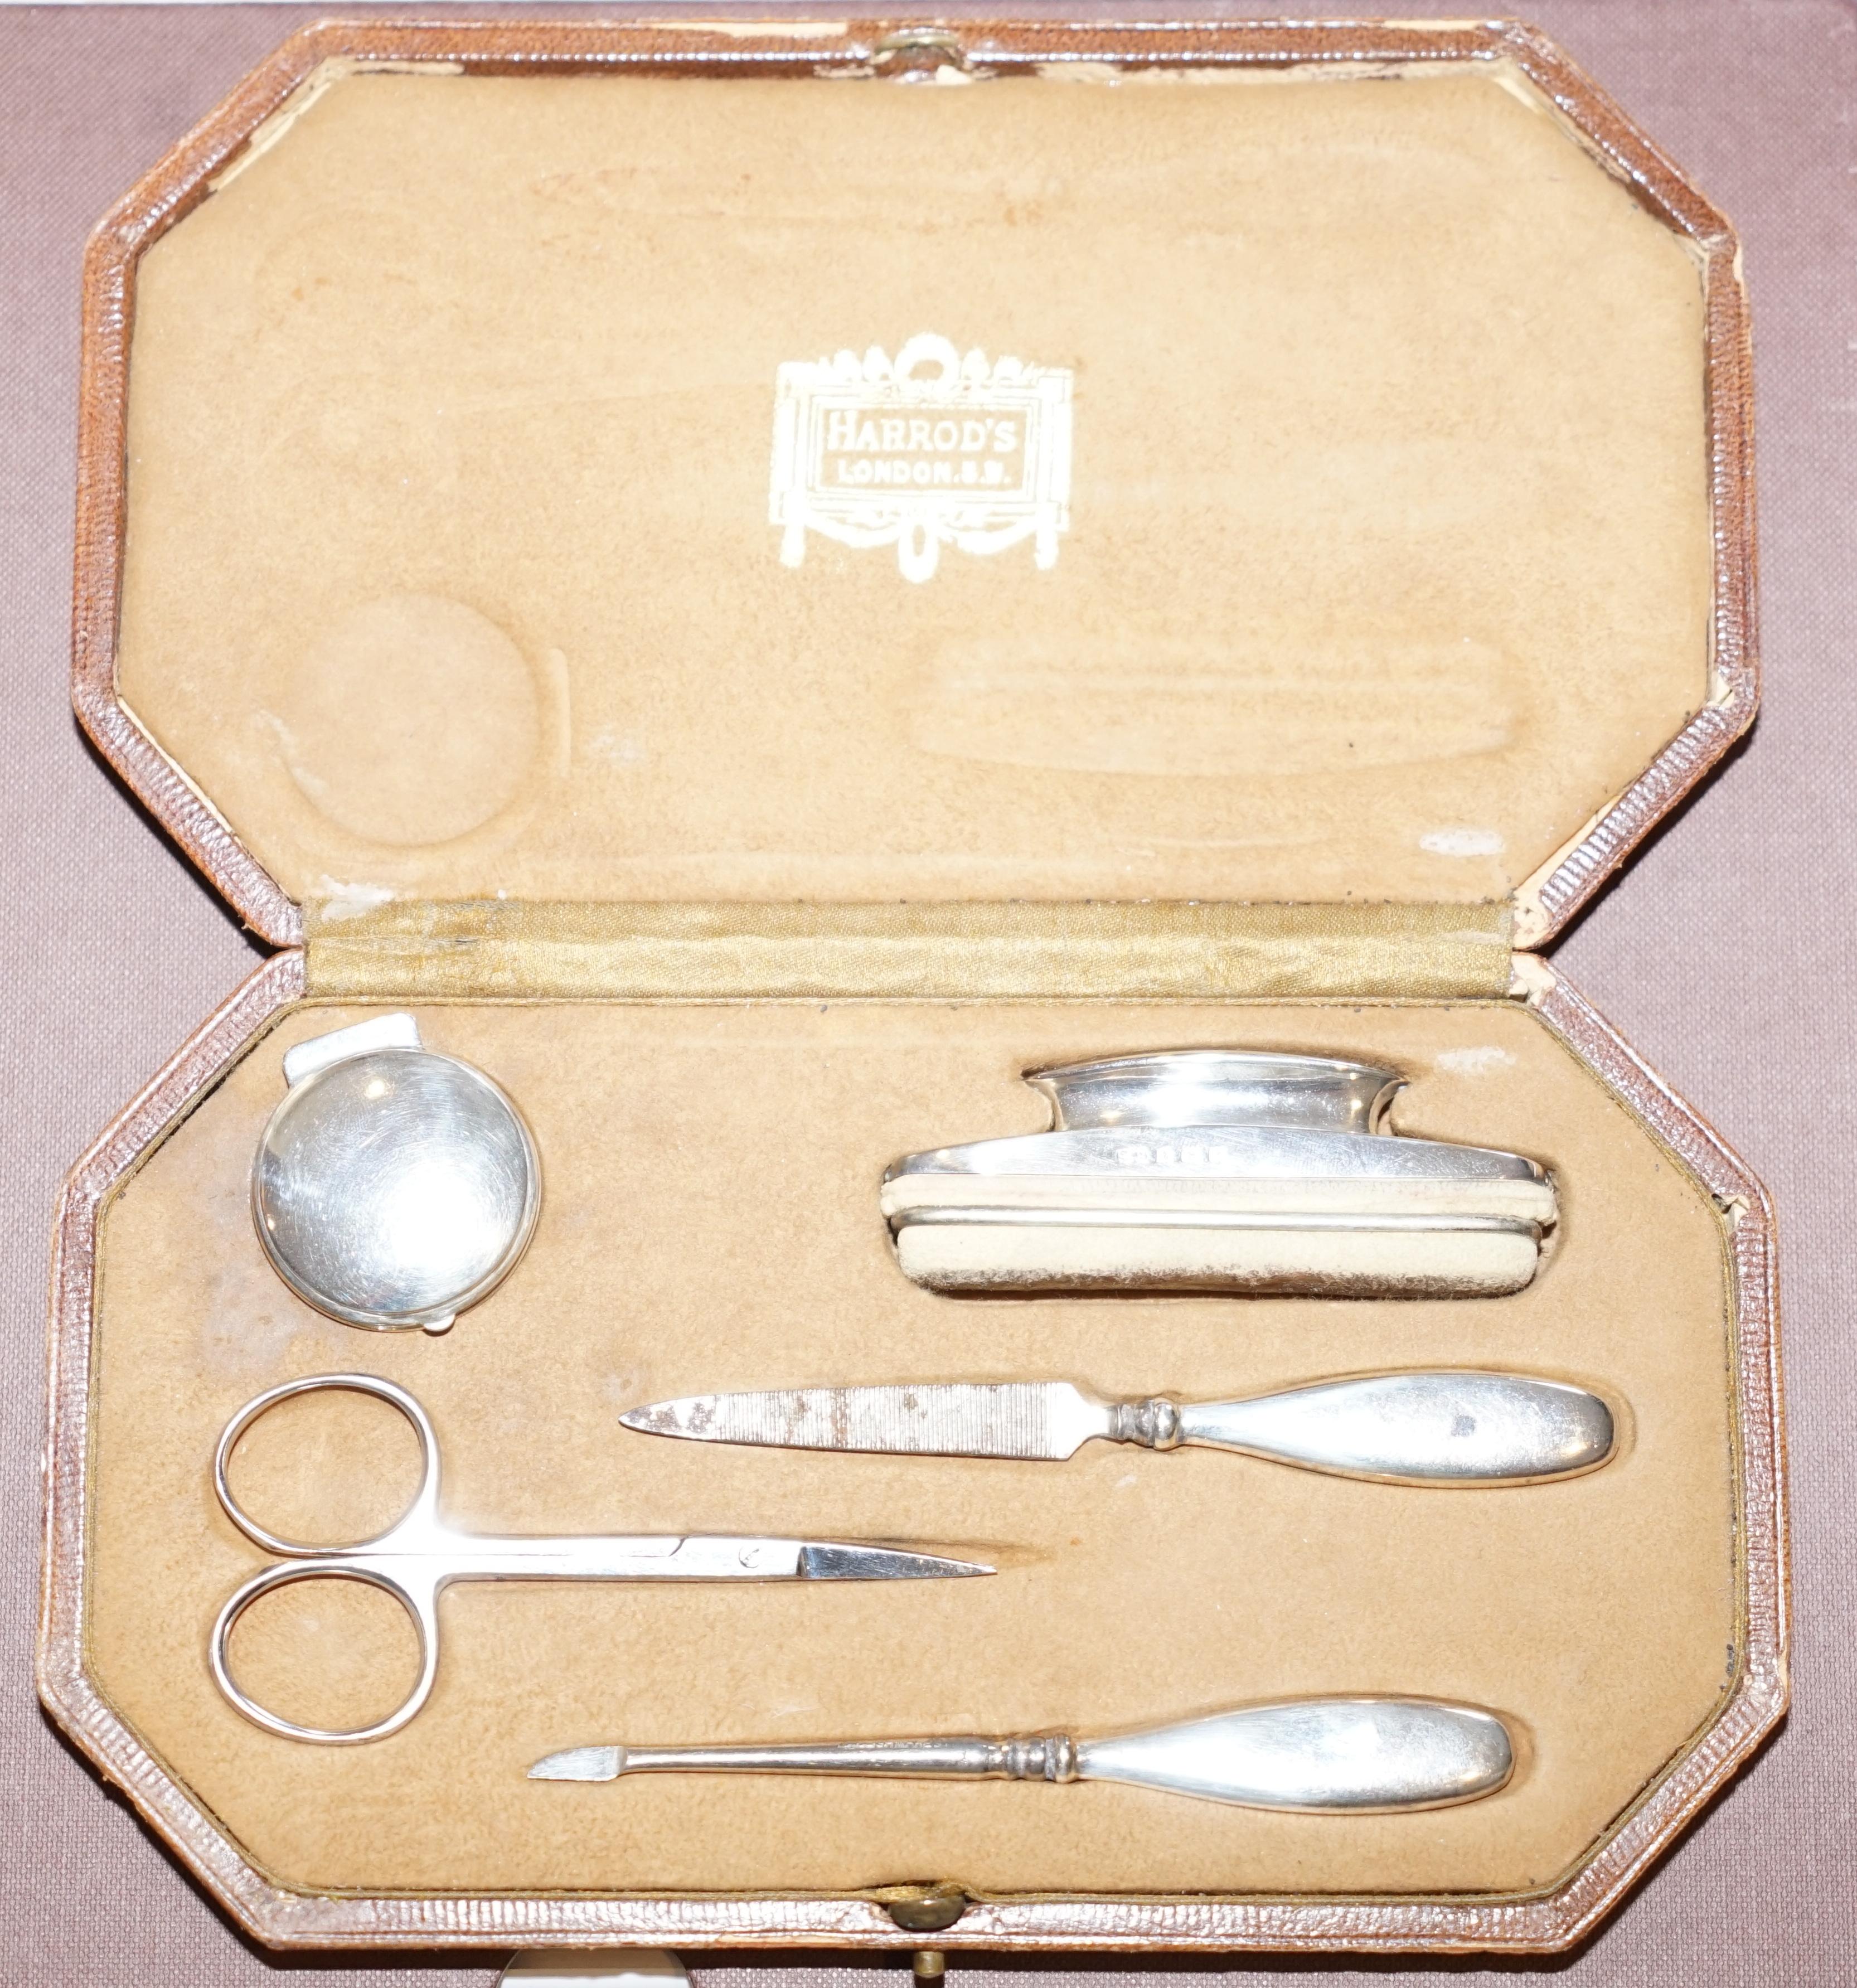 Wir freuen uns, diese atemberaubende Original Harrods London 1923 voll gestempelt Sterling Silber Maniküre-Set zum Verkauf anbieten.

Eine sehr schöne elegante Suite von Sterling Silber Nagel Werkzeuge in der ursprünglichen Harrods London Fall.